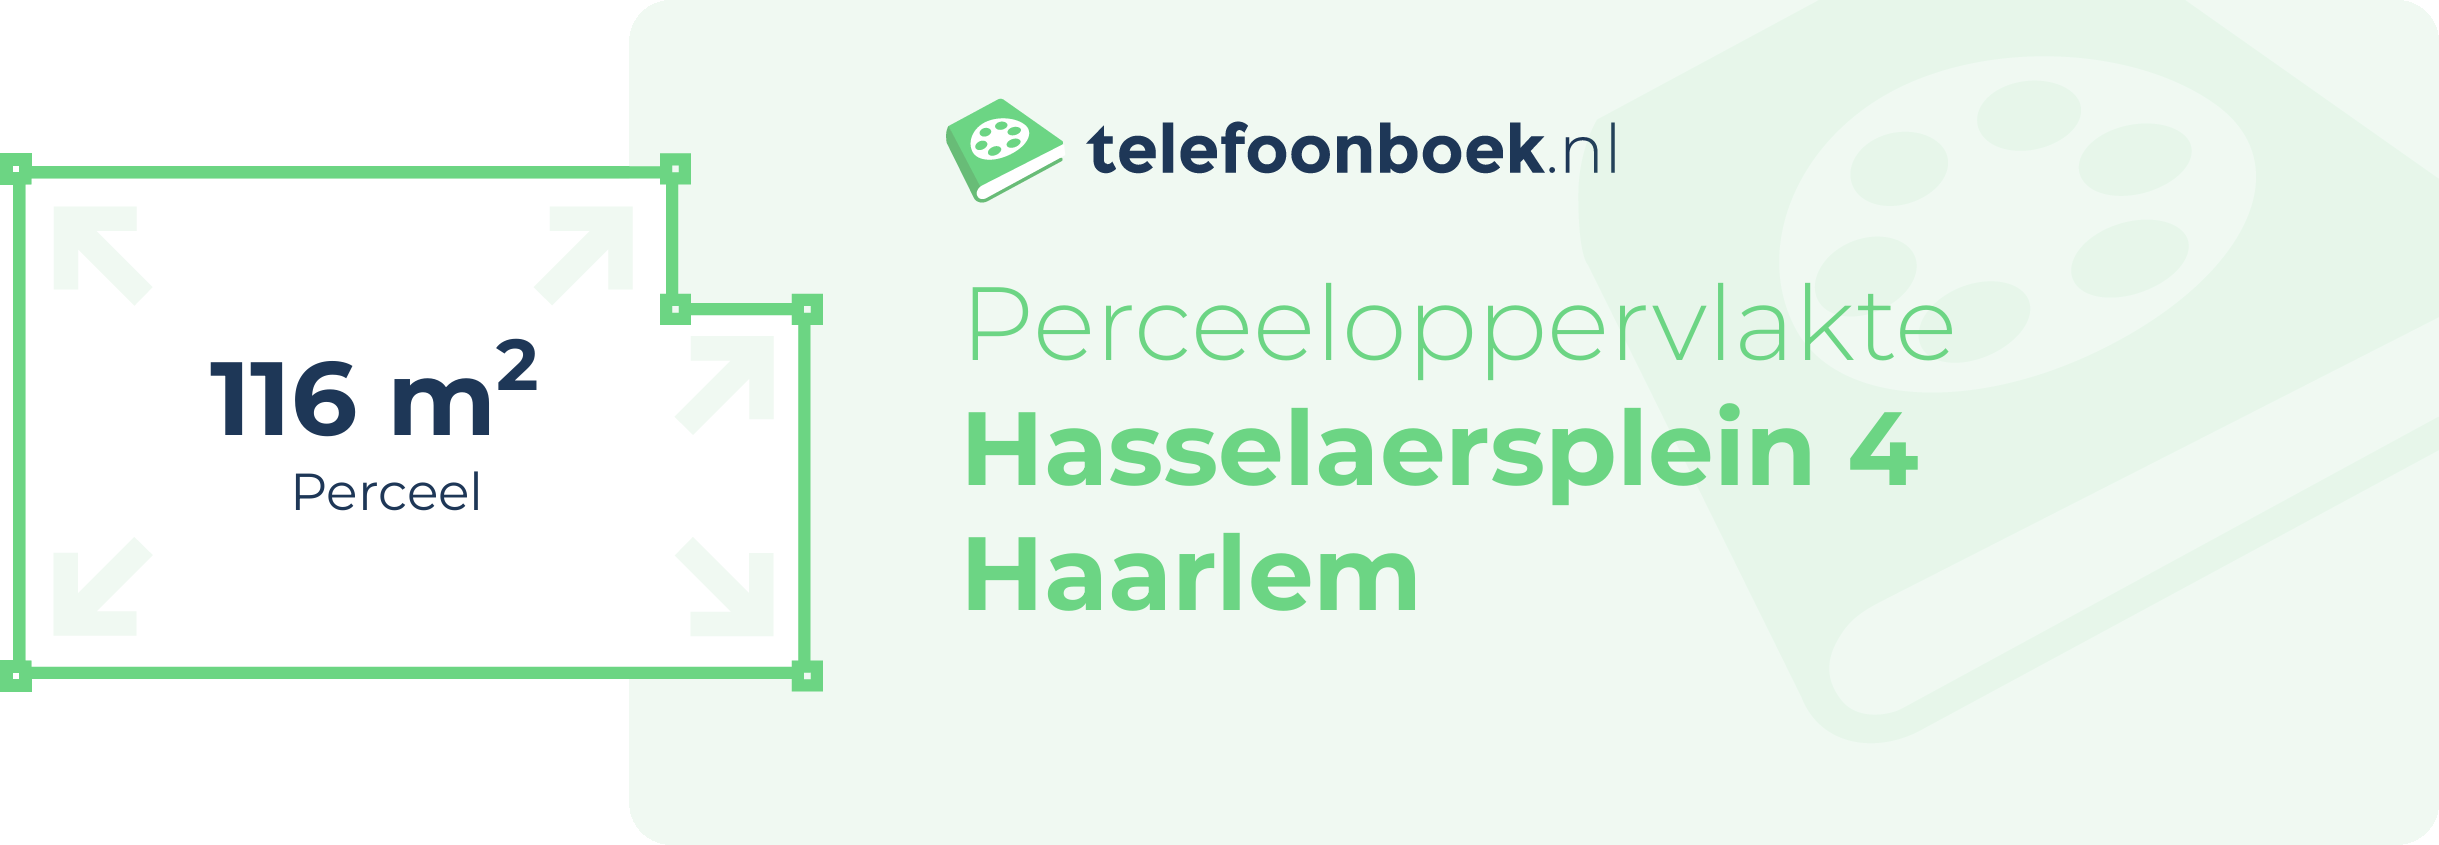 Perceeloppervlakte Hasselaersplein 4 Haarlem